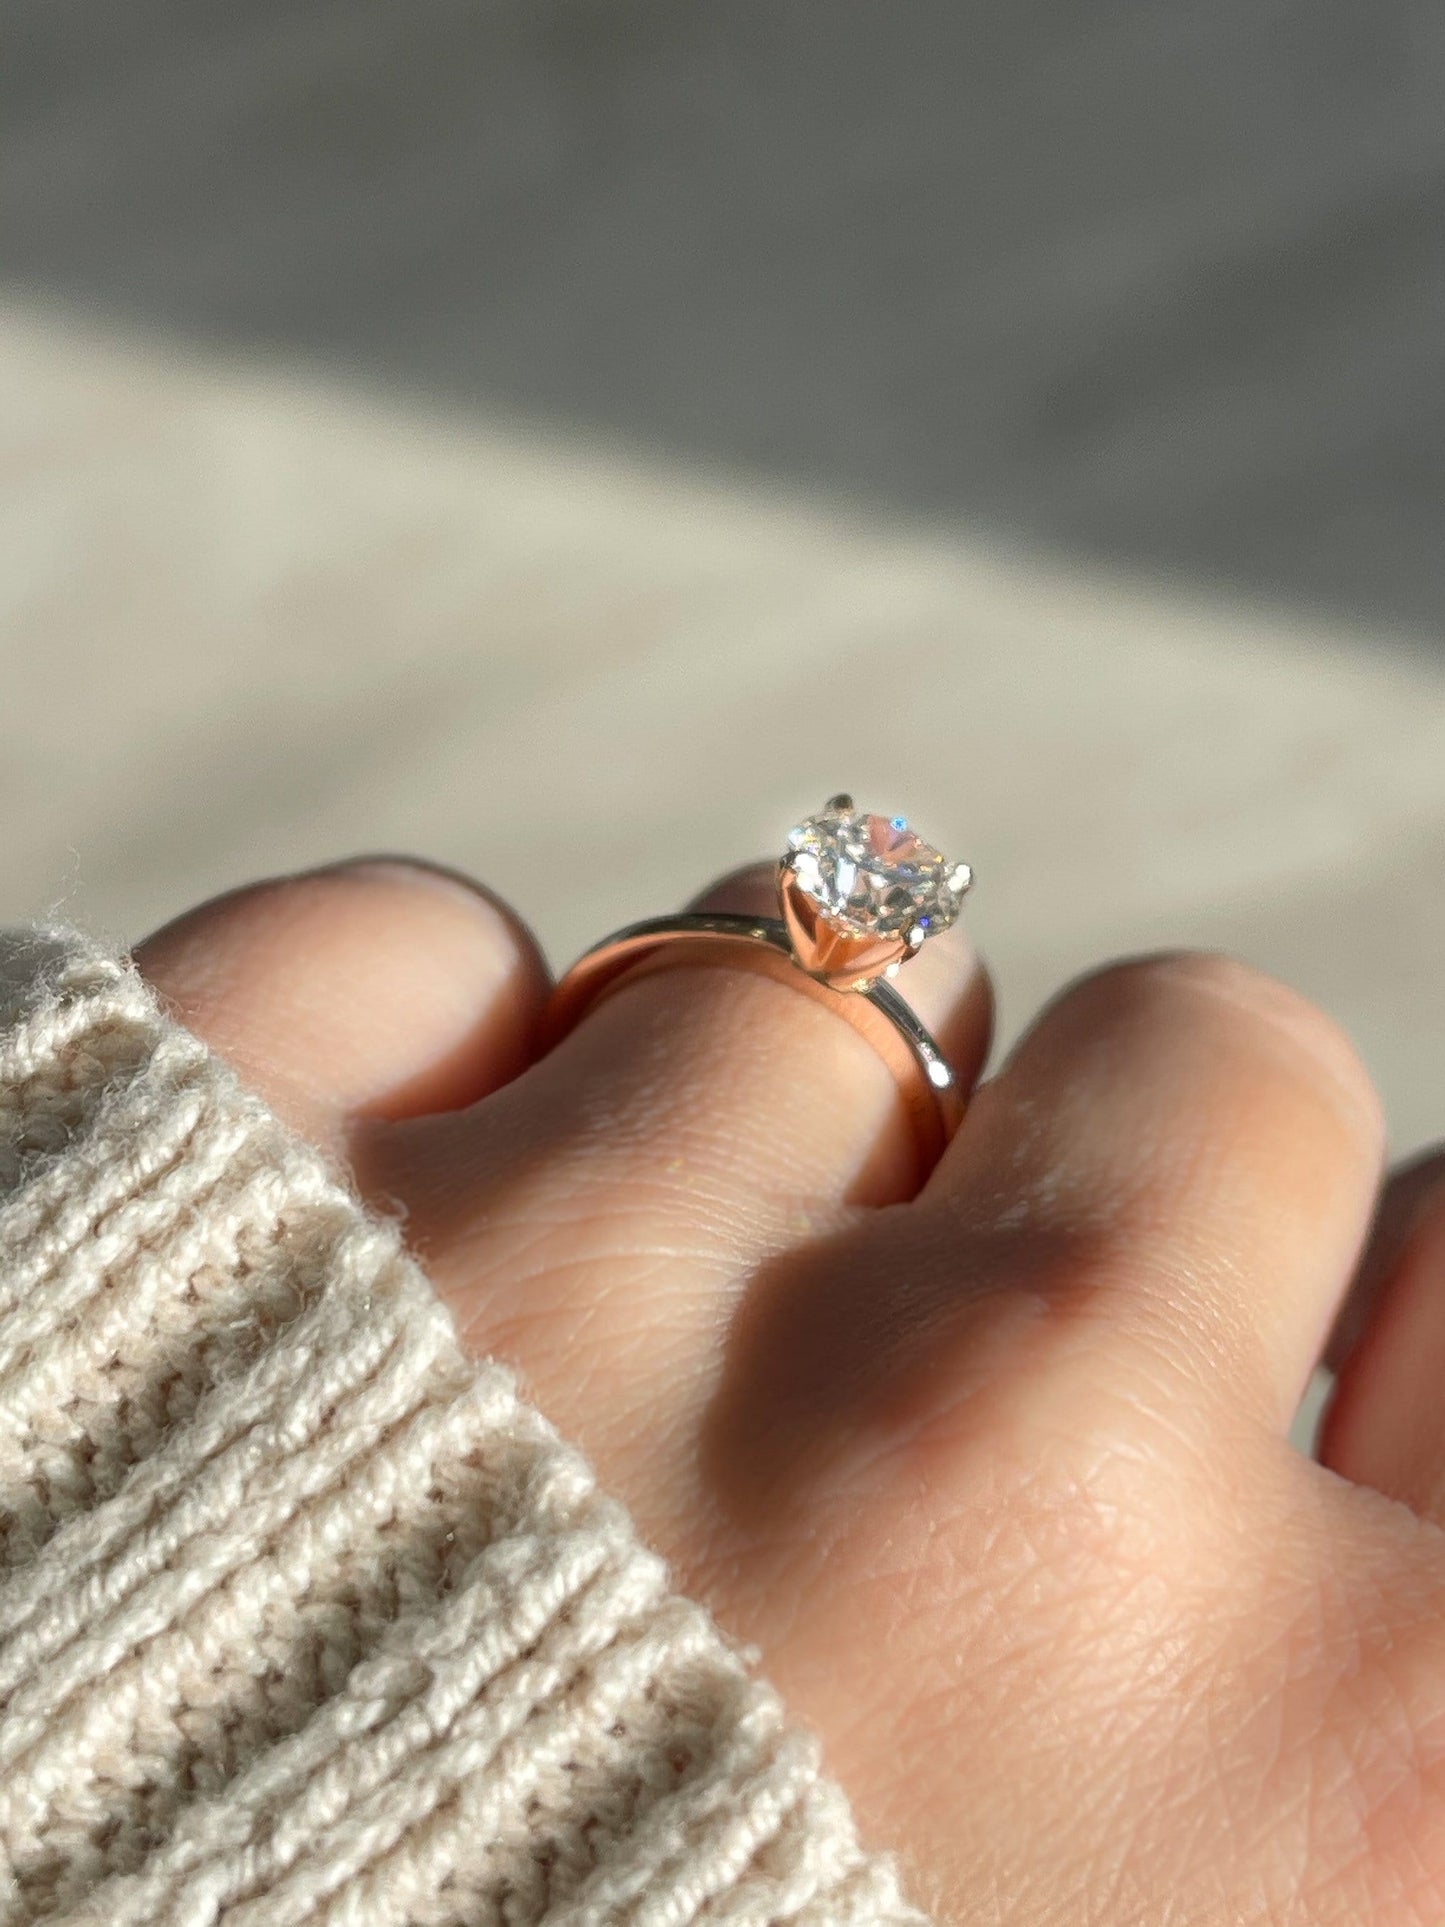 Custom Three Stone Diamond Engagement Ring